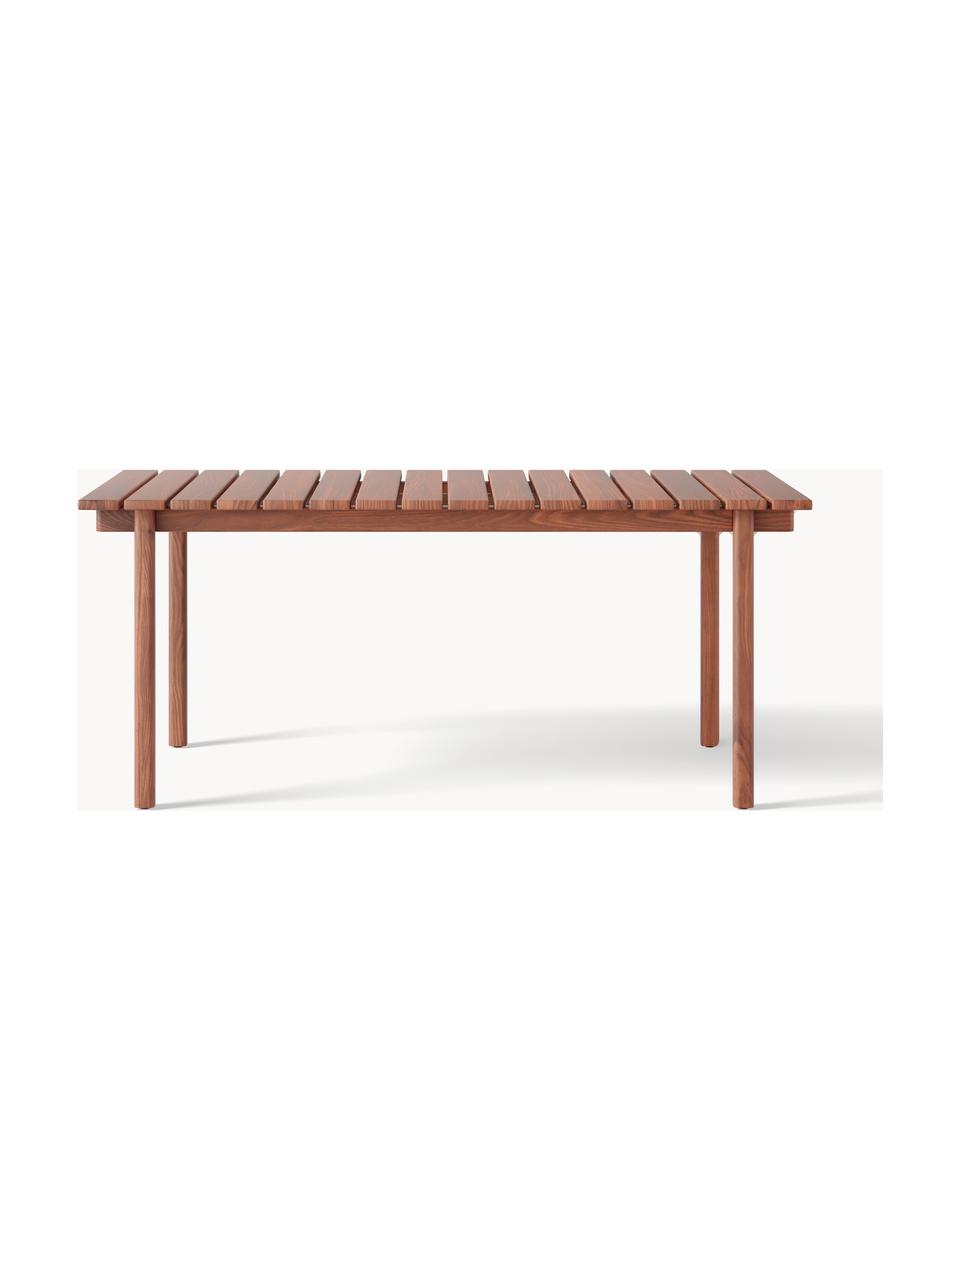 Záhradný stôl Matheus, 180 x 90 cm, Masívne akáciové drevo

Tento produkt je vyrobený z trvalo udržateľného dreva s certifikátom FSC®., Akáciové drevo, Š 180 x H 90 cm